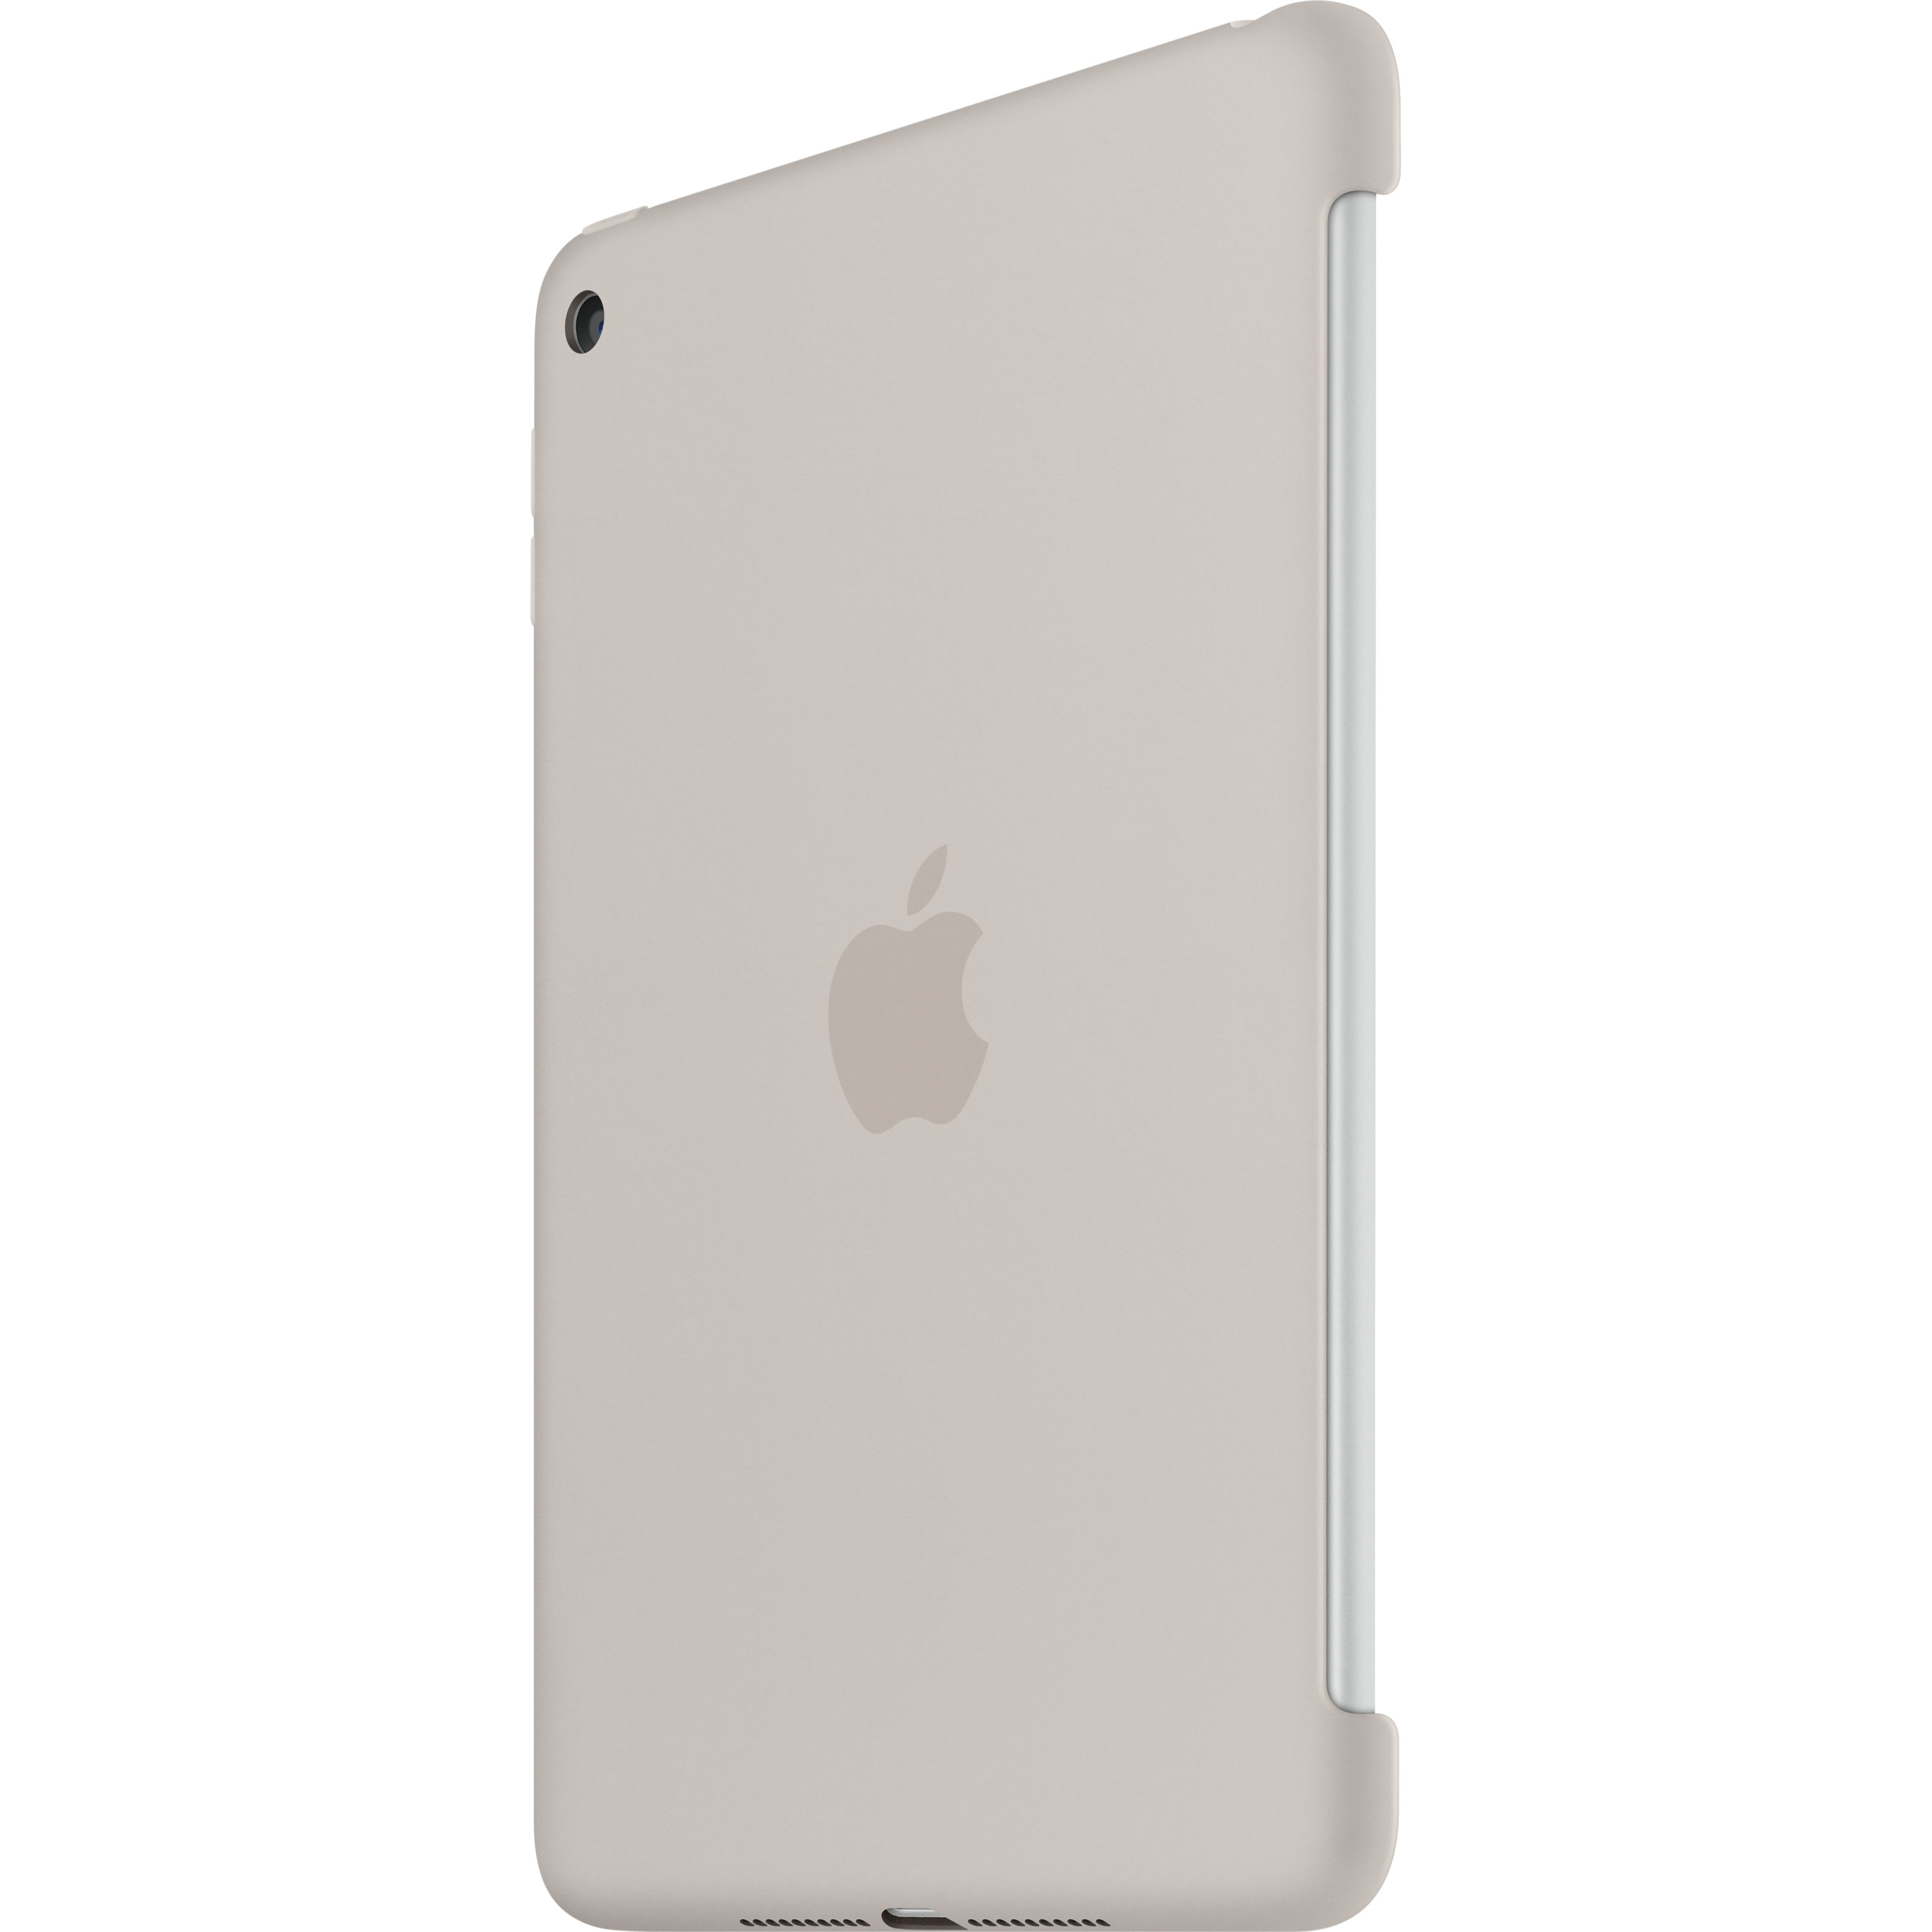 Apple iPad mini 4 Silicone Case, Stone - image 1 of 5